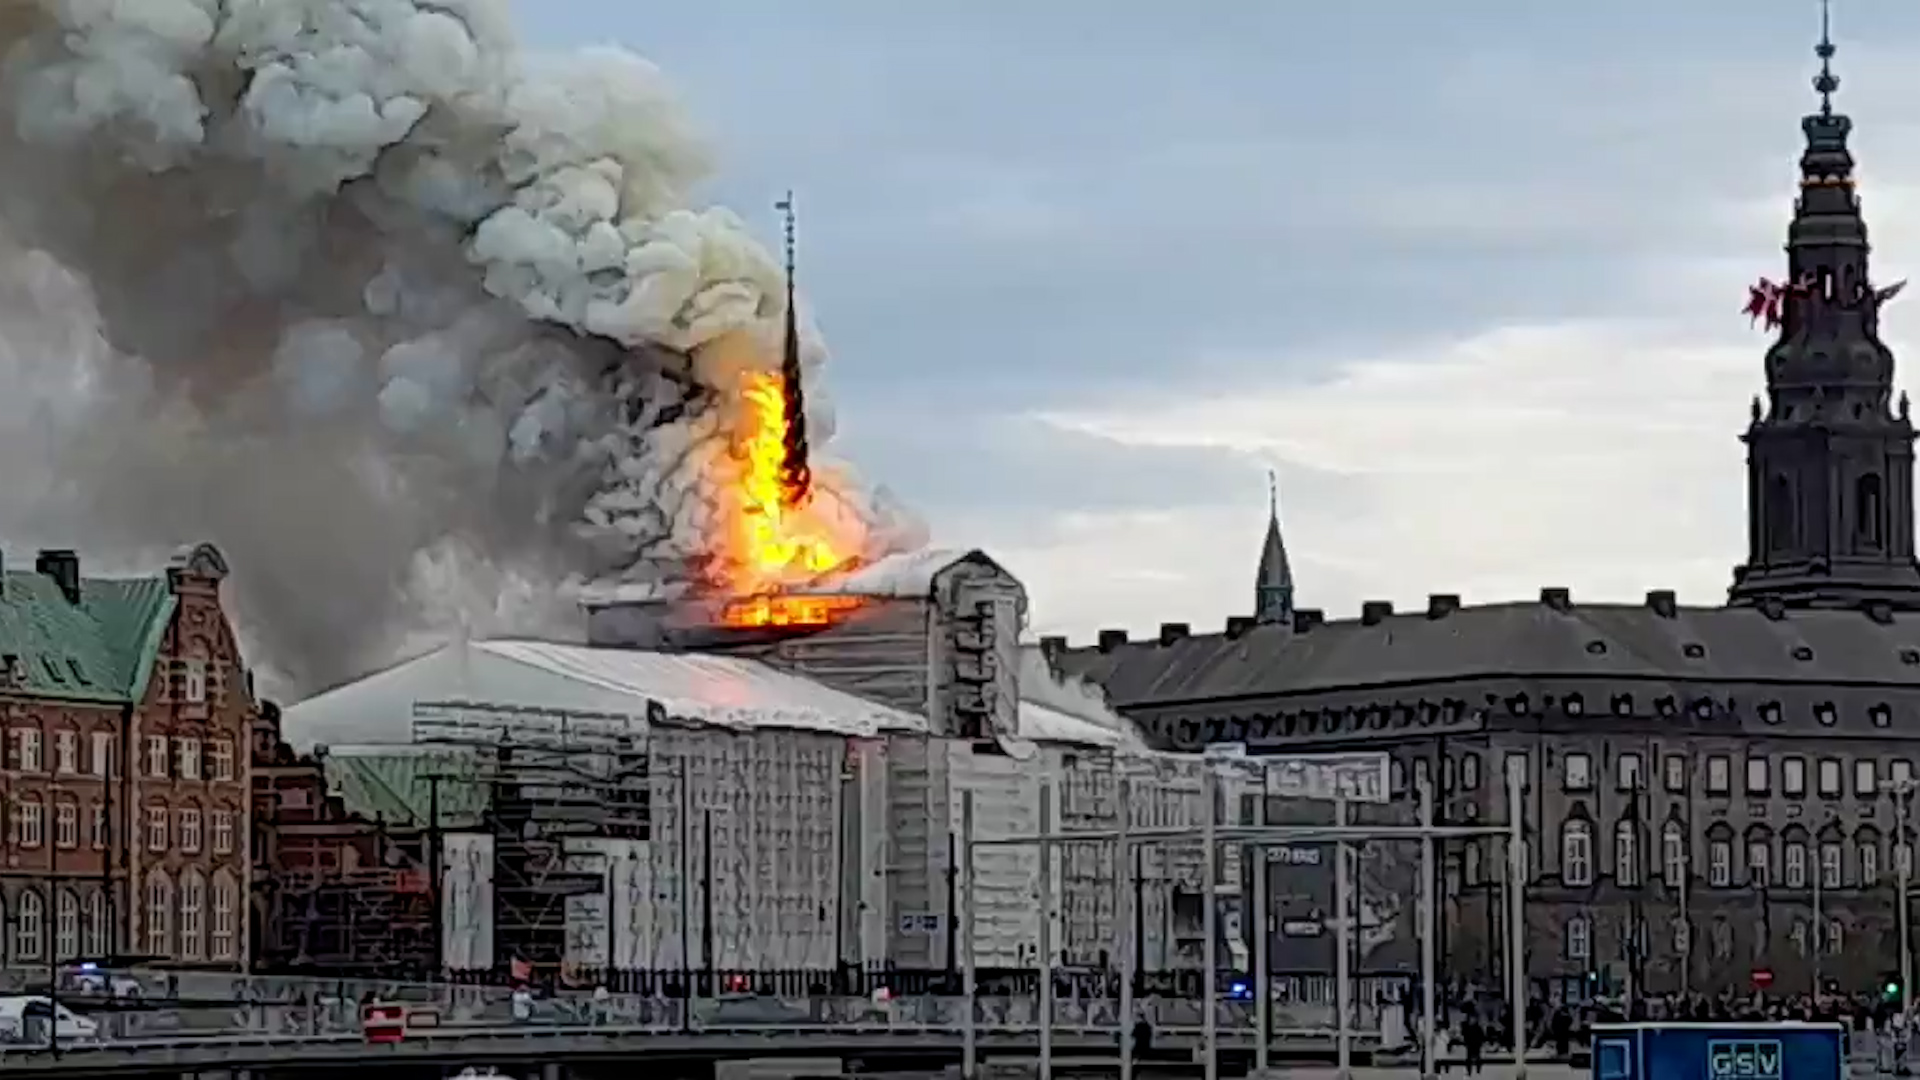 Kopenhag'daki 17. yüzyıldan kalma tarihi borsa binasında yangın çıktı